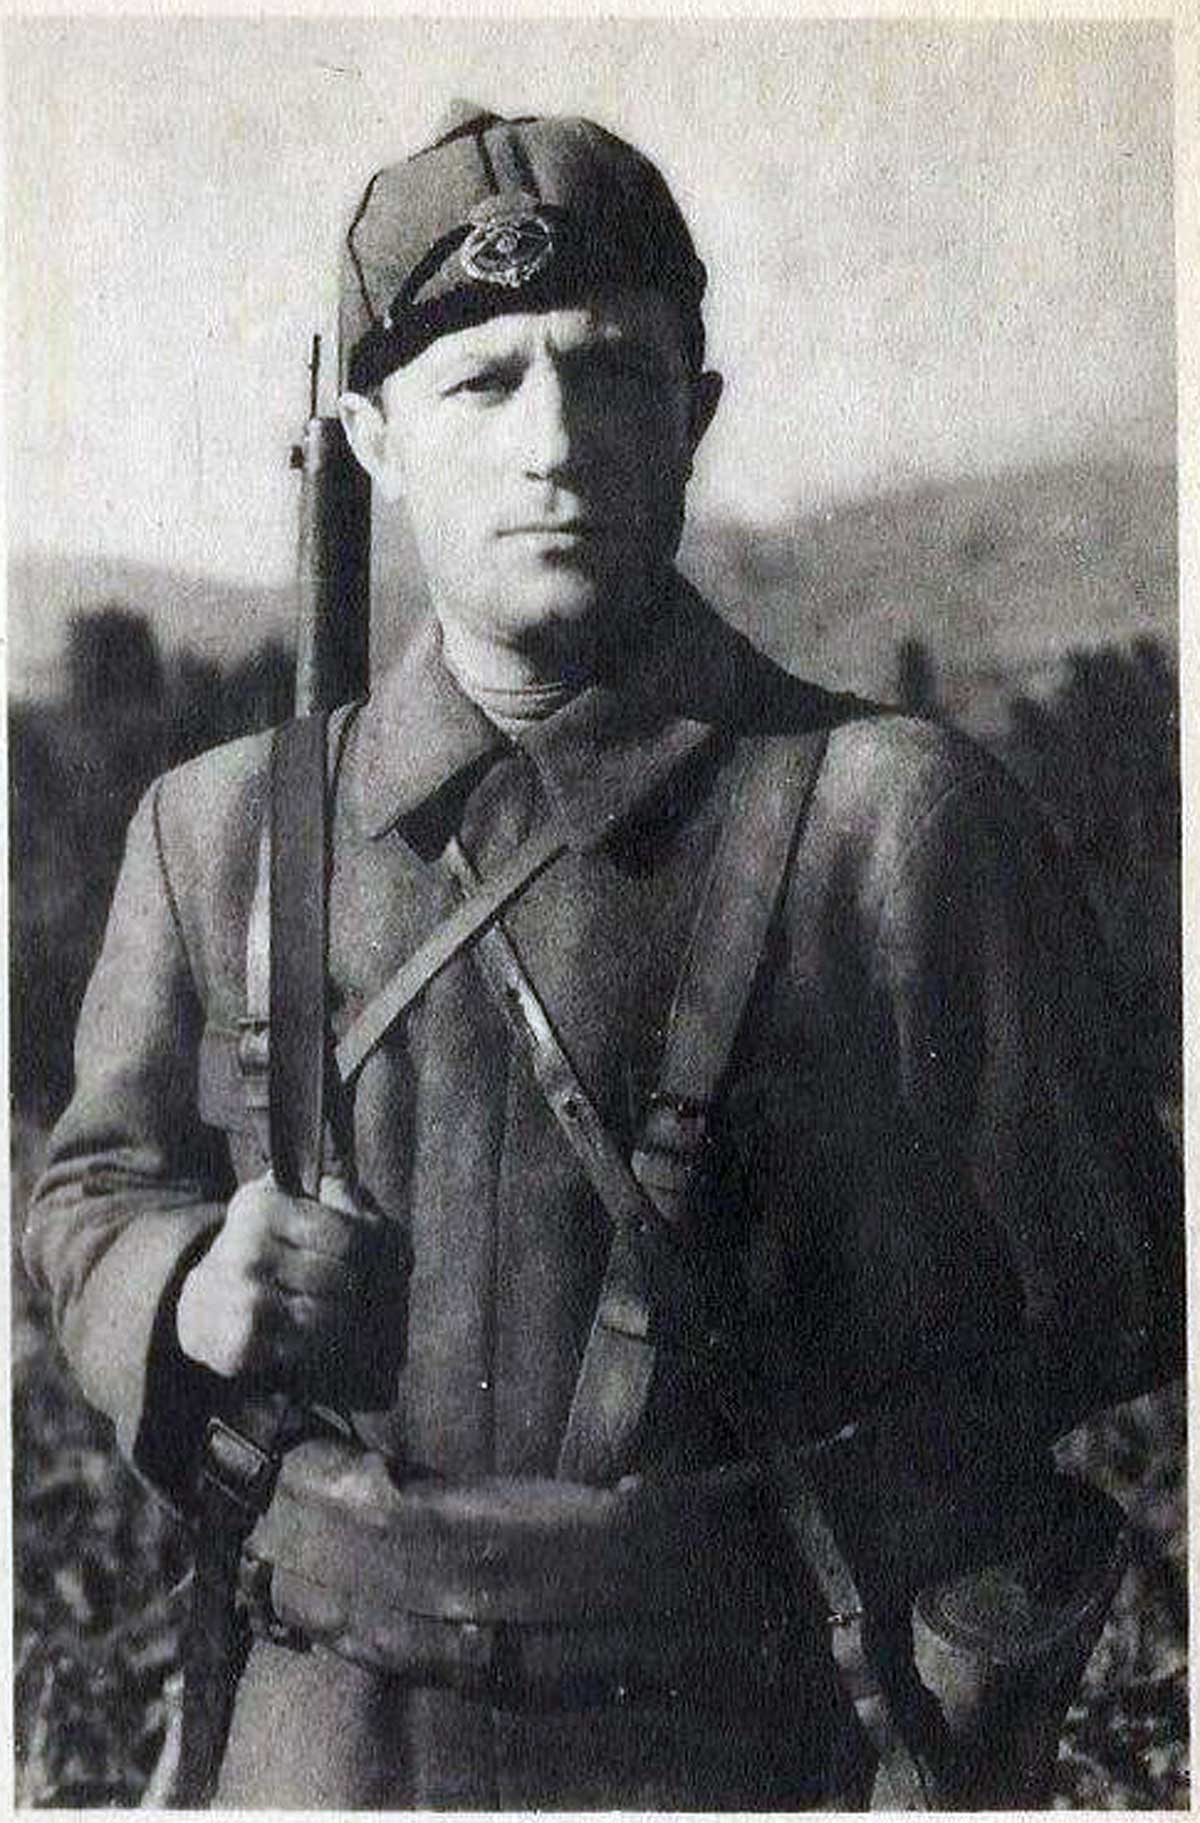 Ванчо Михајлов, чувени нациста и родоначелник Македонске државе